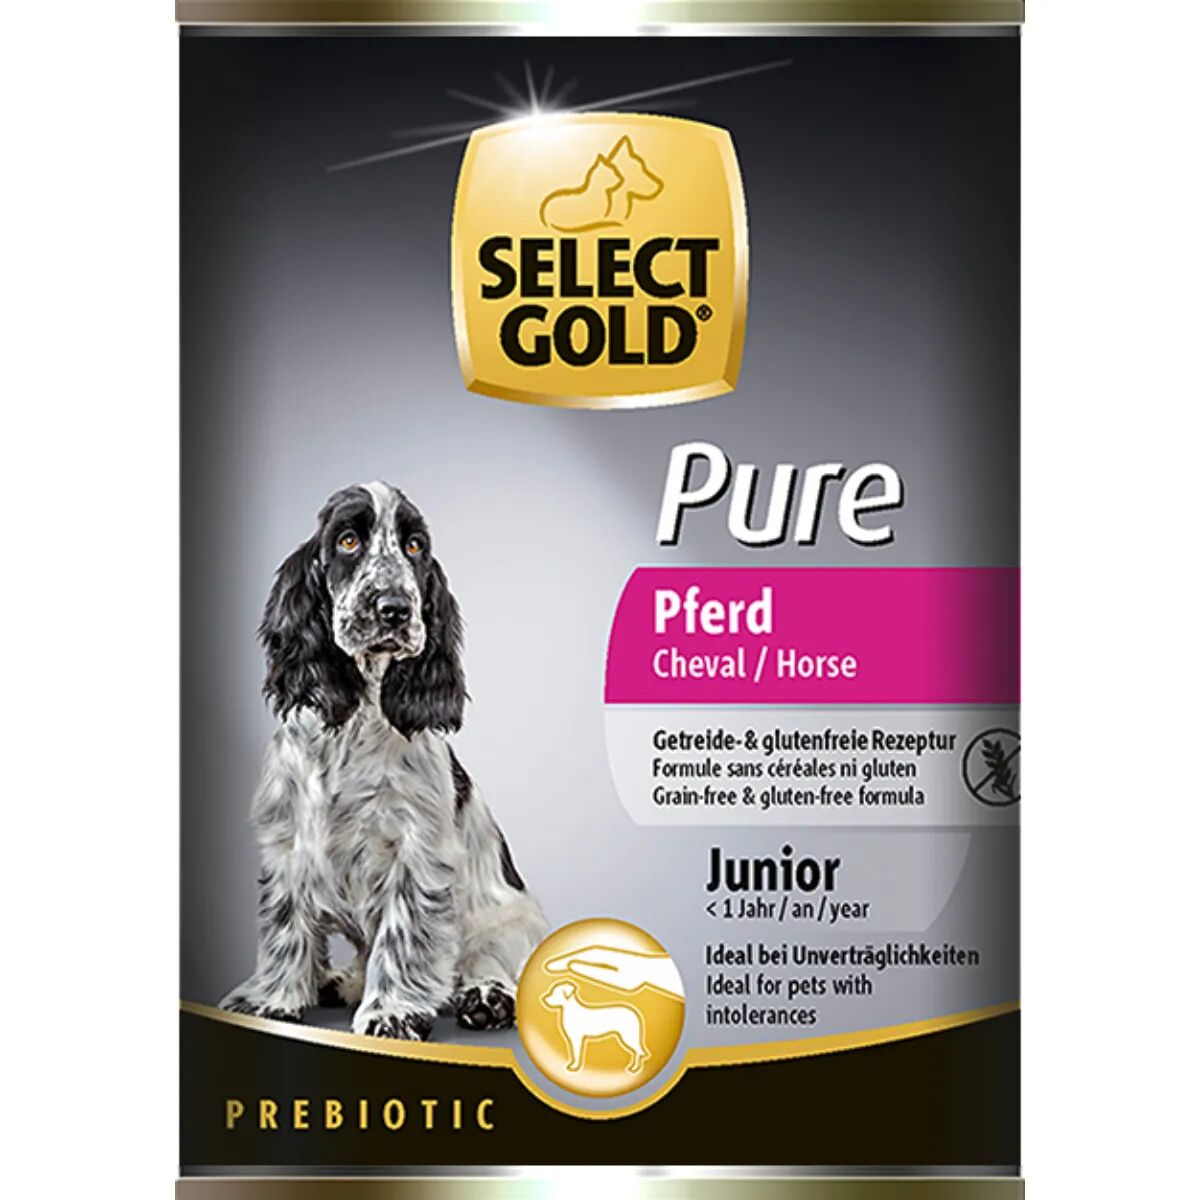 SELECT GOLD Pure Puppy Lattina 400G CAVALLO